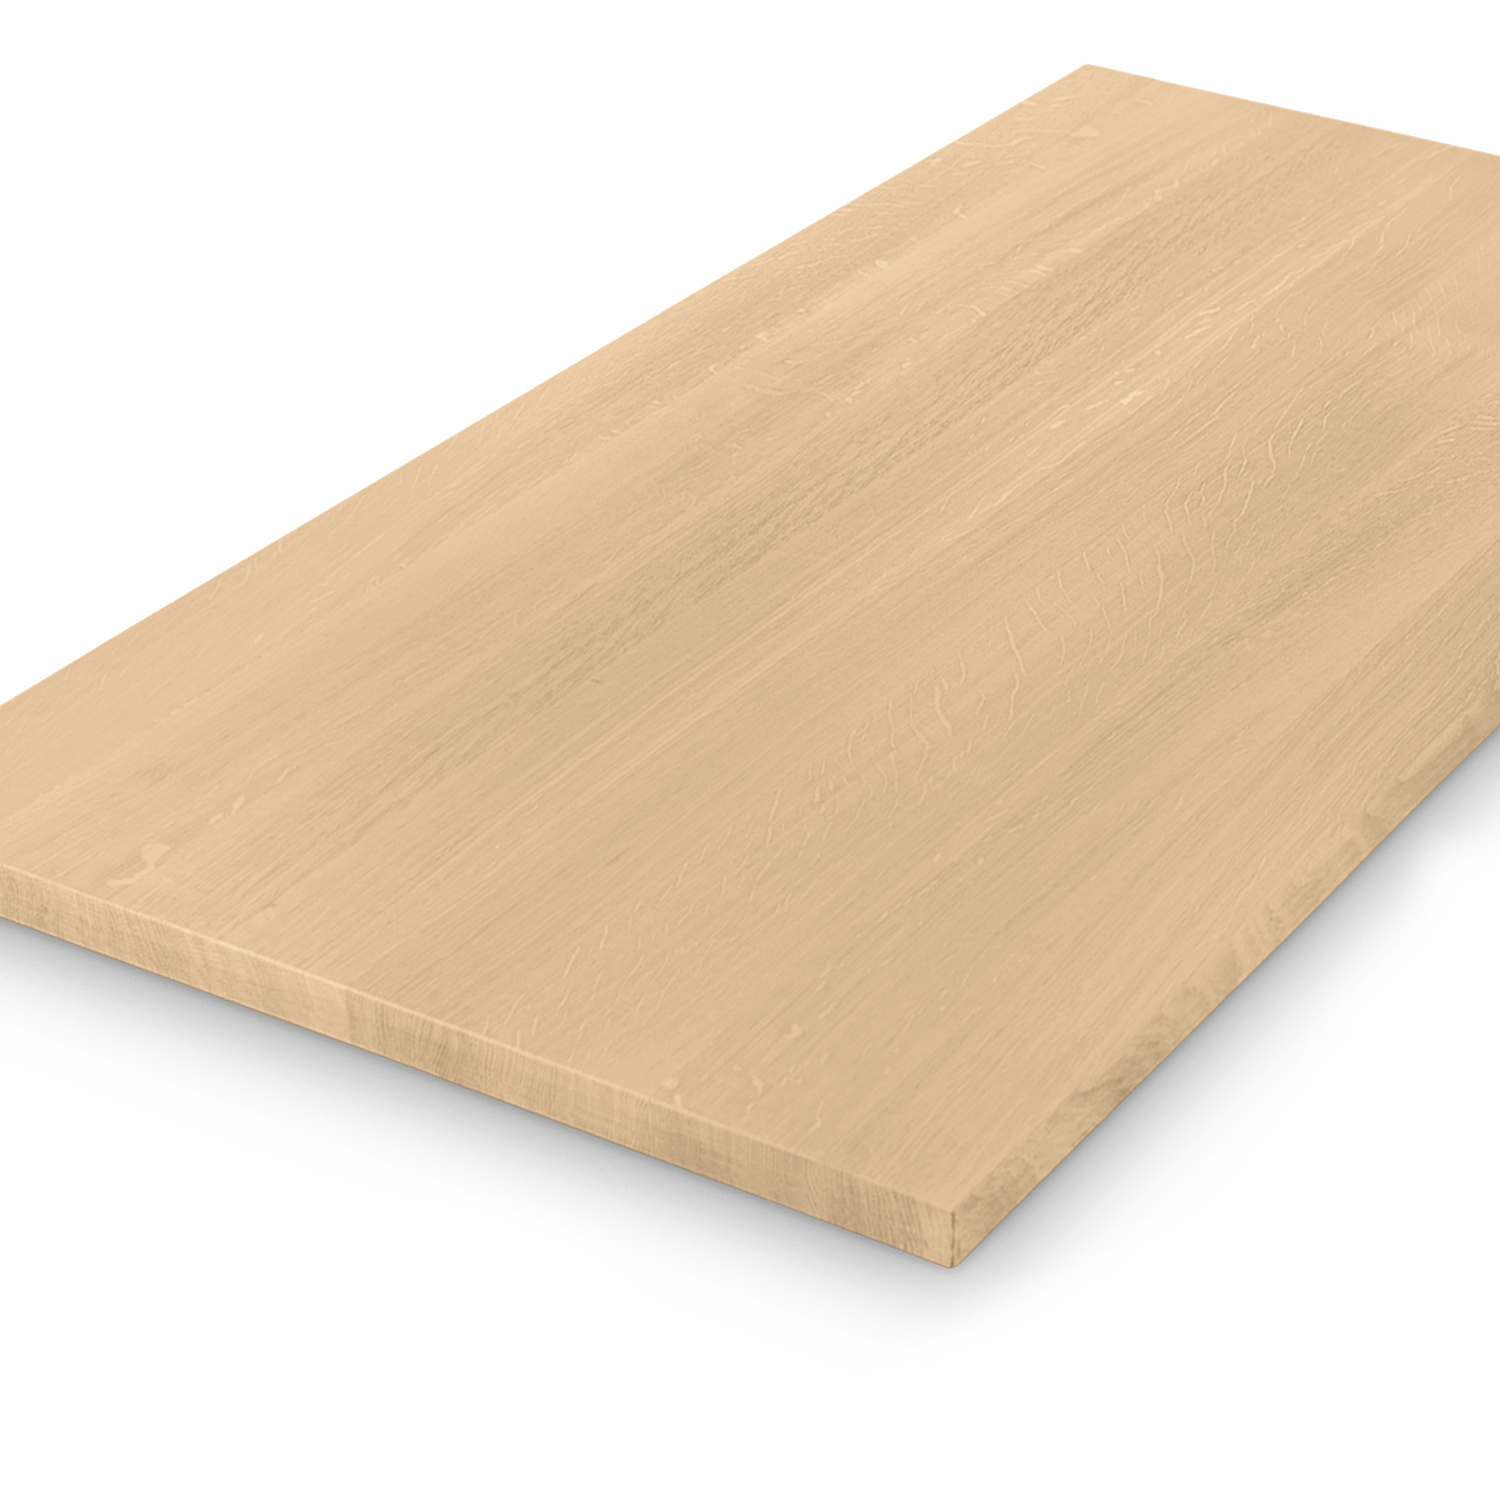  Tischplatte Eiche - 4 cm dick (1-Schicht) - Breite Lamellen (10 - 12 cm breit) - Eichenholz A-Qualität - verleimt & künstlich getrocknet (HF 8-12%) - verschiedene Größen